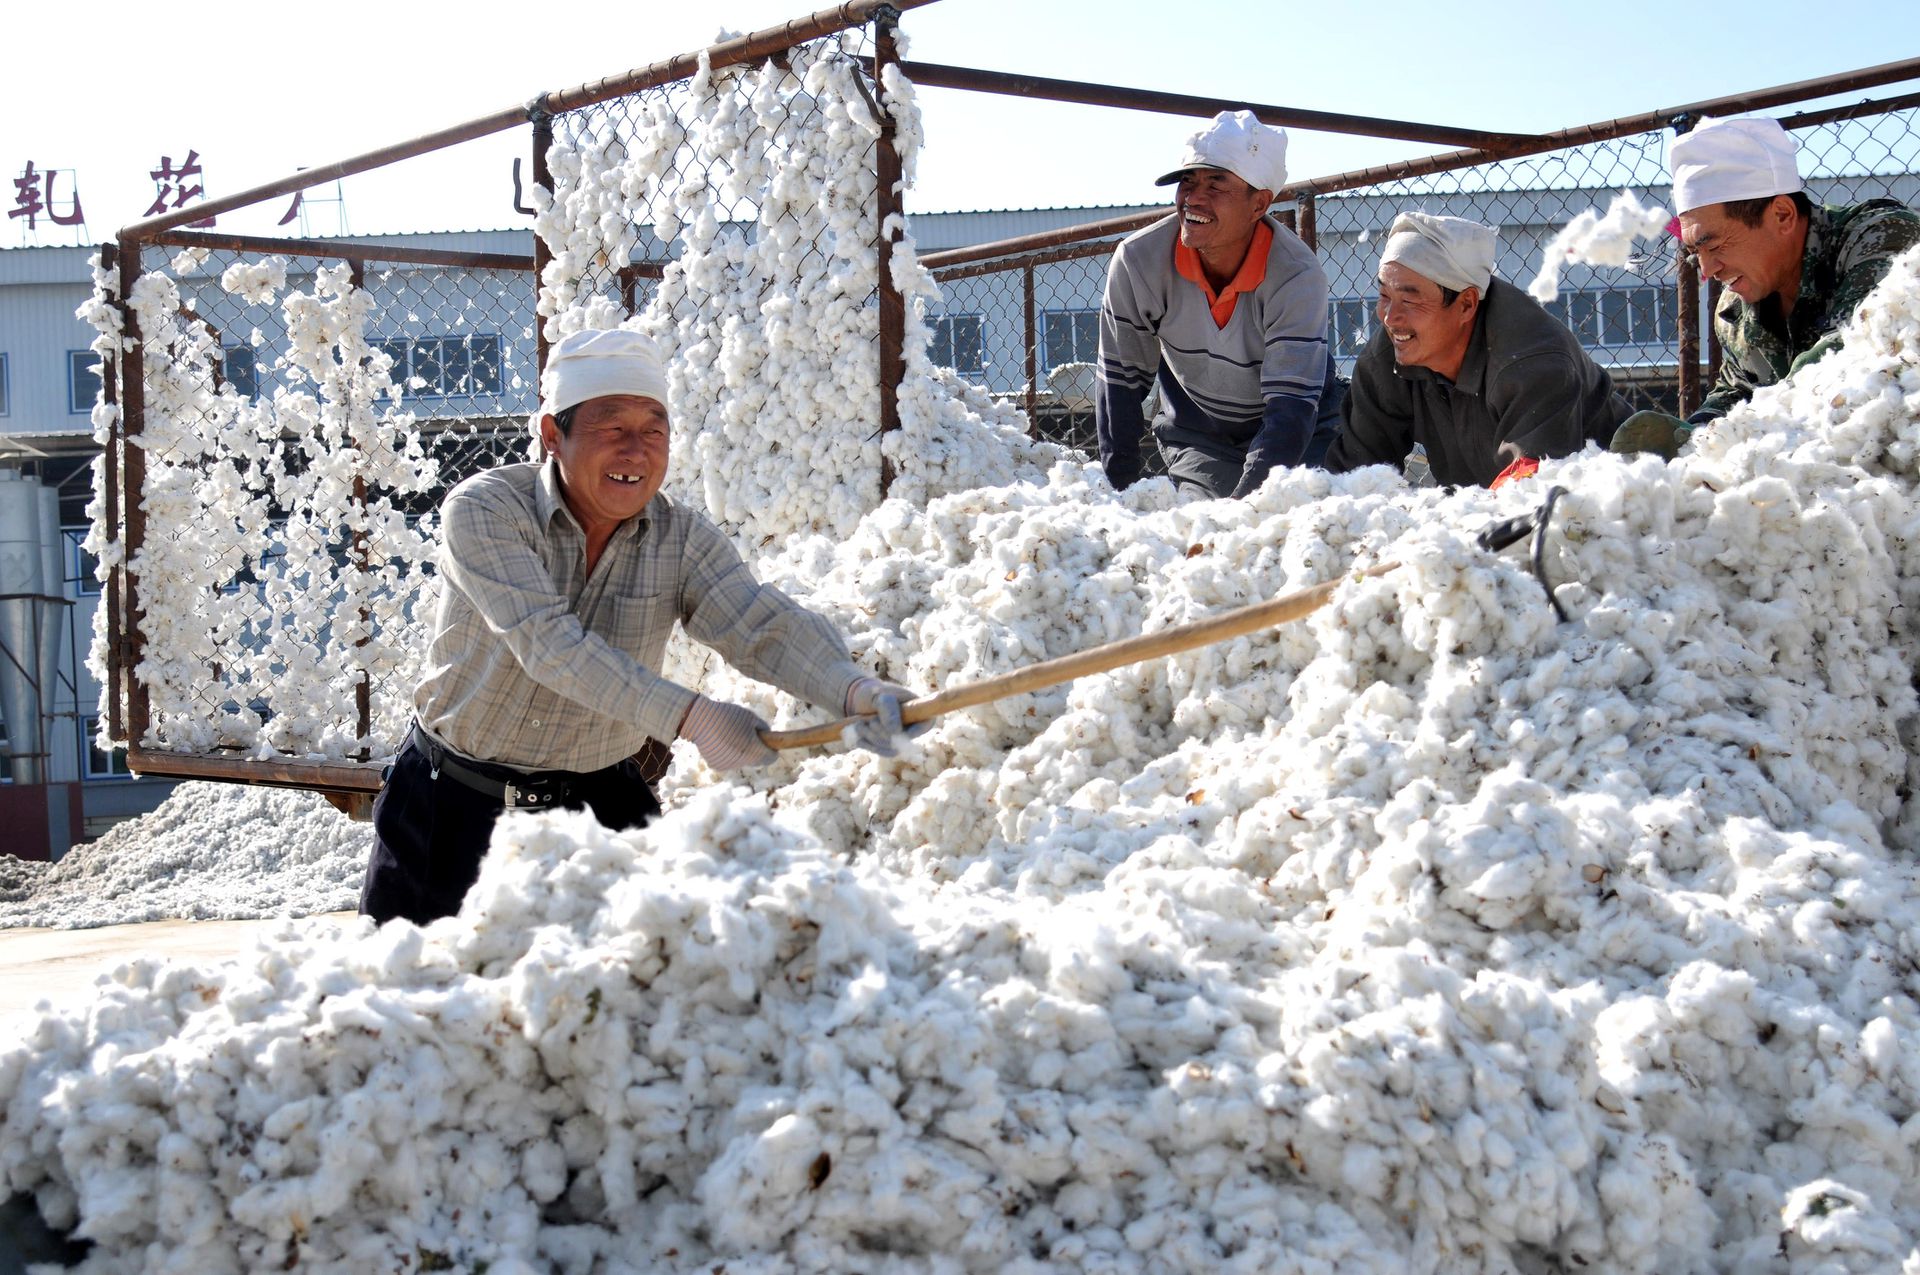 中国新疆棉花种收画面 Gps智能导航播种高度机械化采棉 图集 多维新闻 视觉